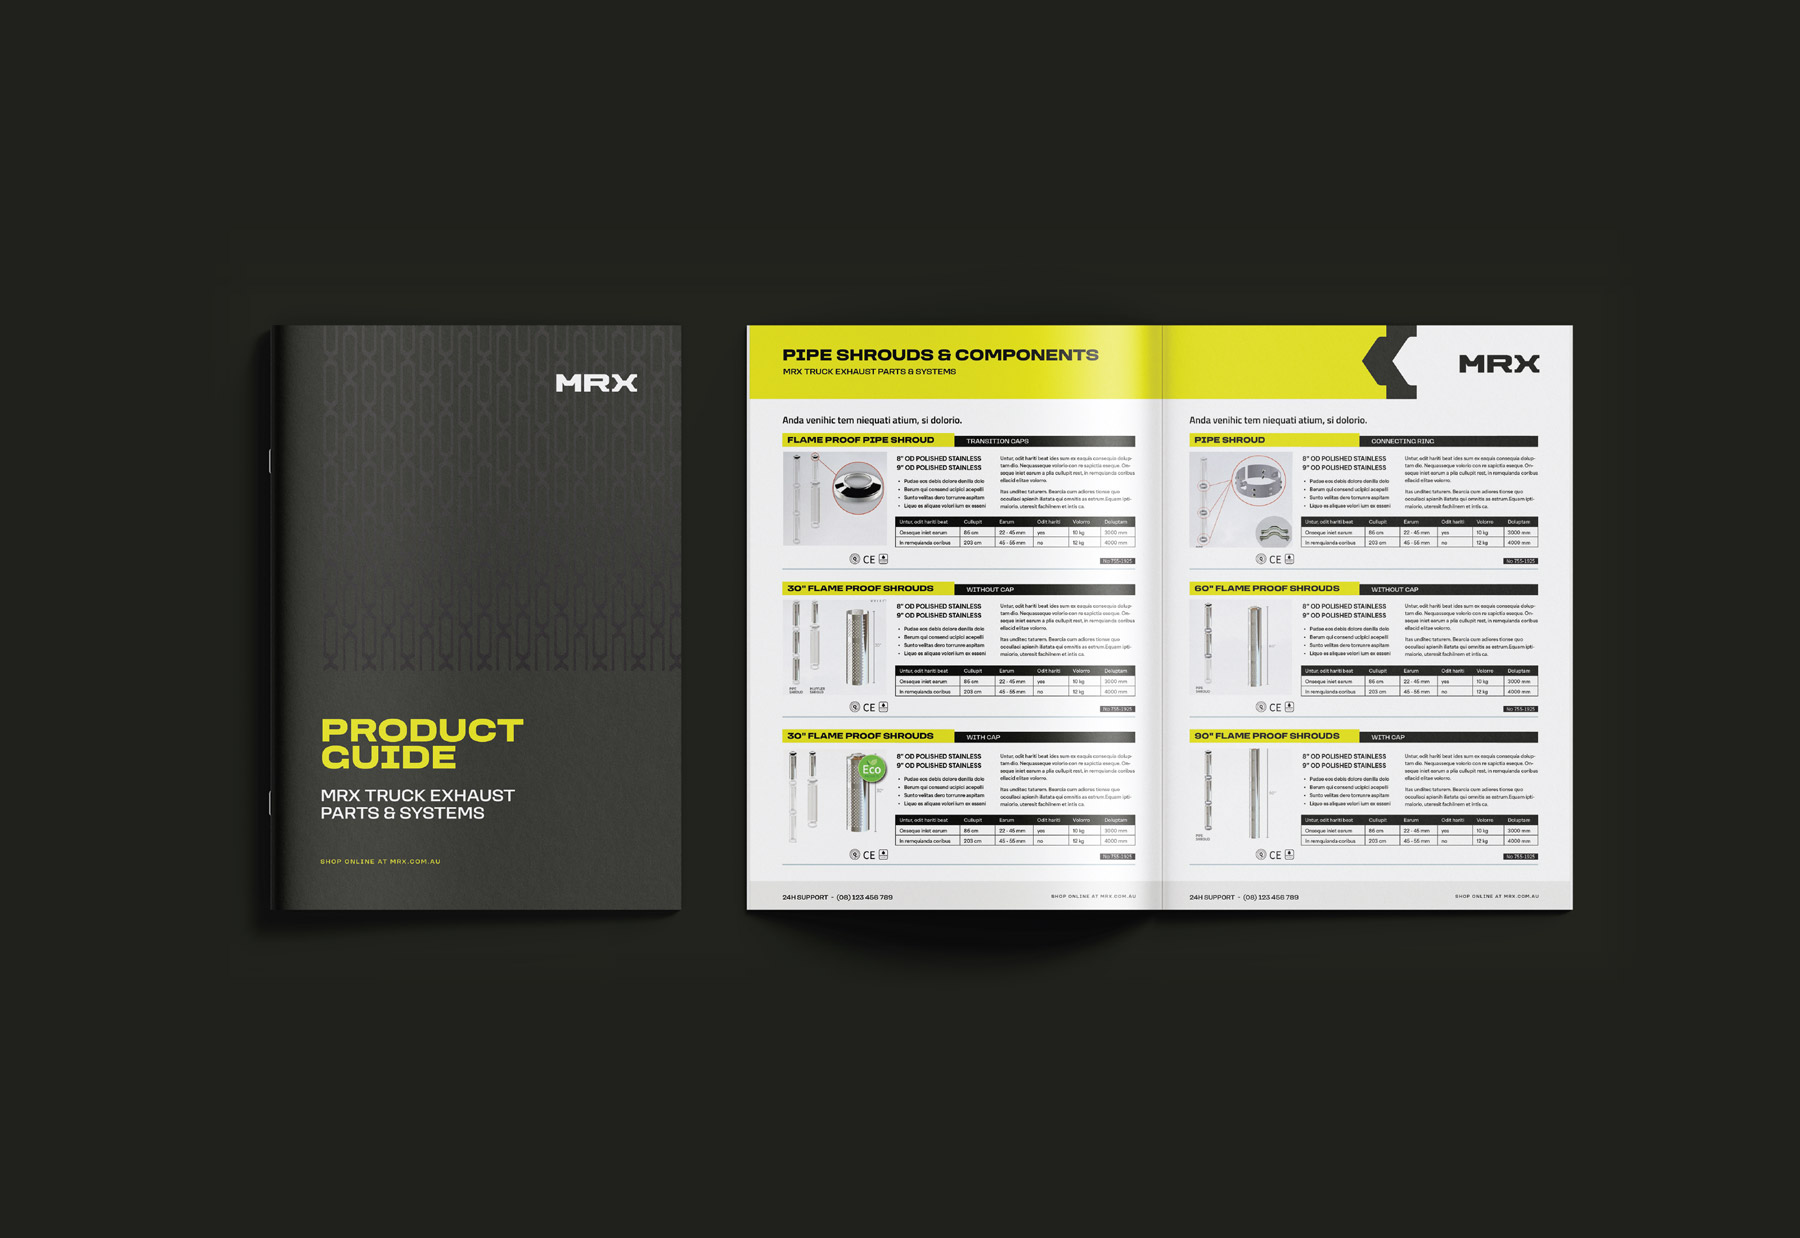 MRX branded capability brochure design